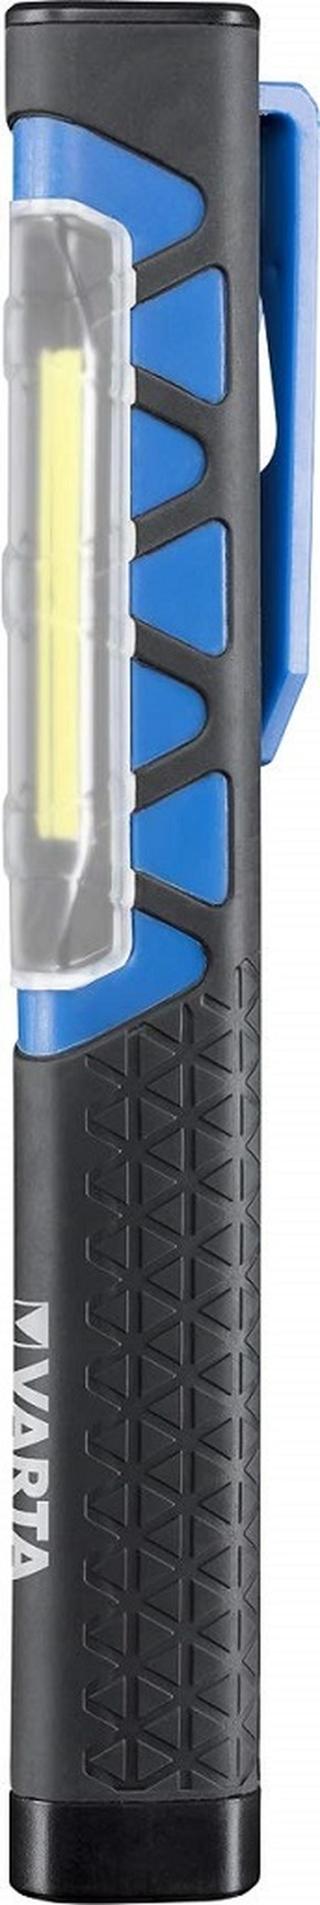 Varta tužková baterie Aa Work Flex Pocket Light incl. 3 x Aaa Batteries, 17647101421